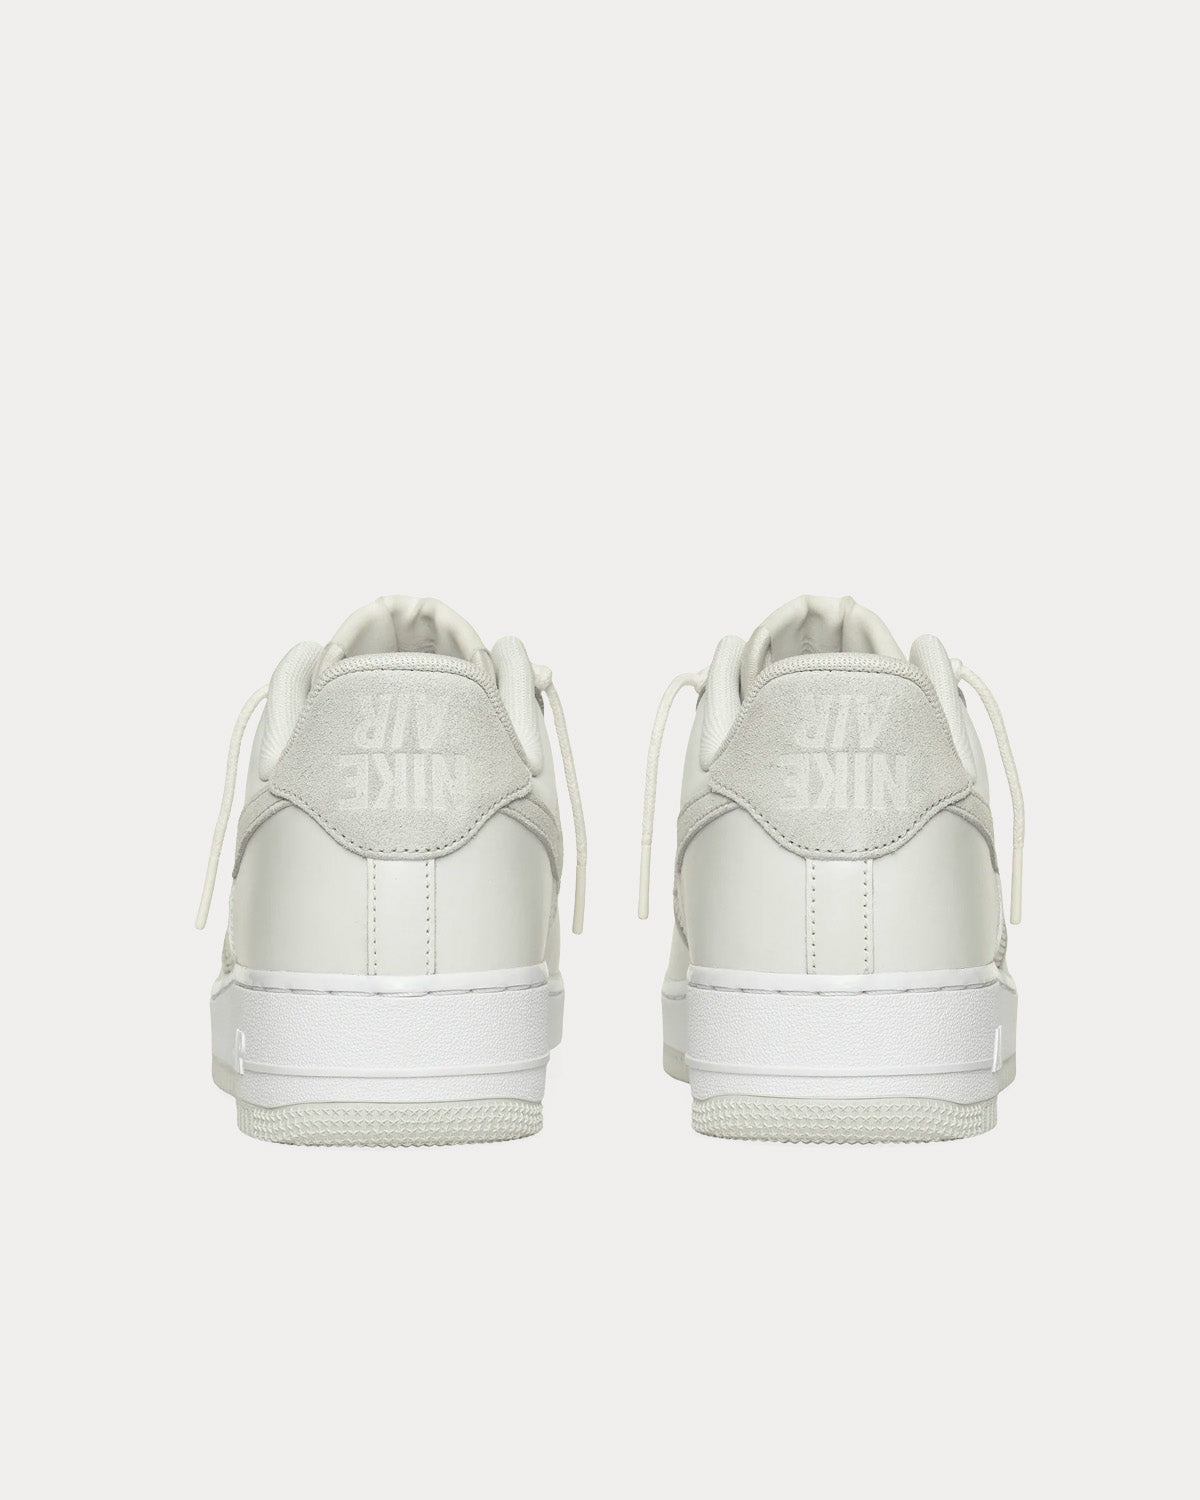 Nike x Slam Jam - AF-1 Triple White Low Top Sneakers